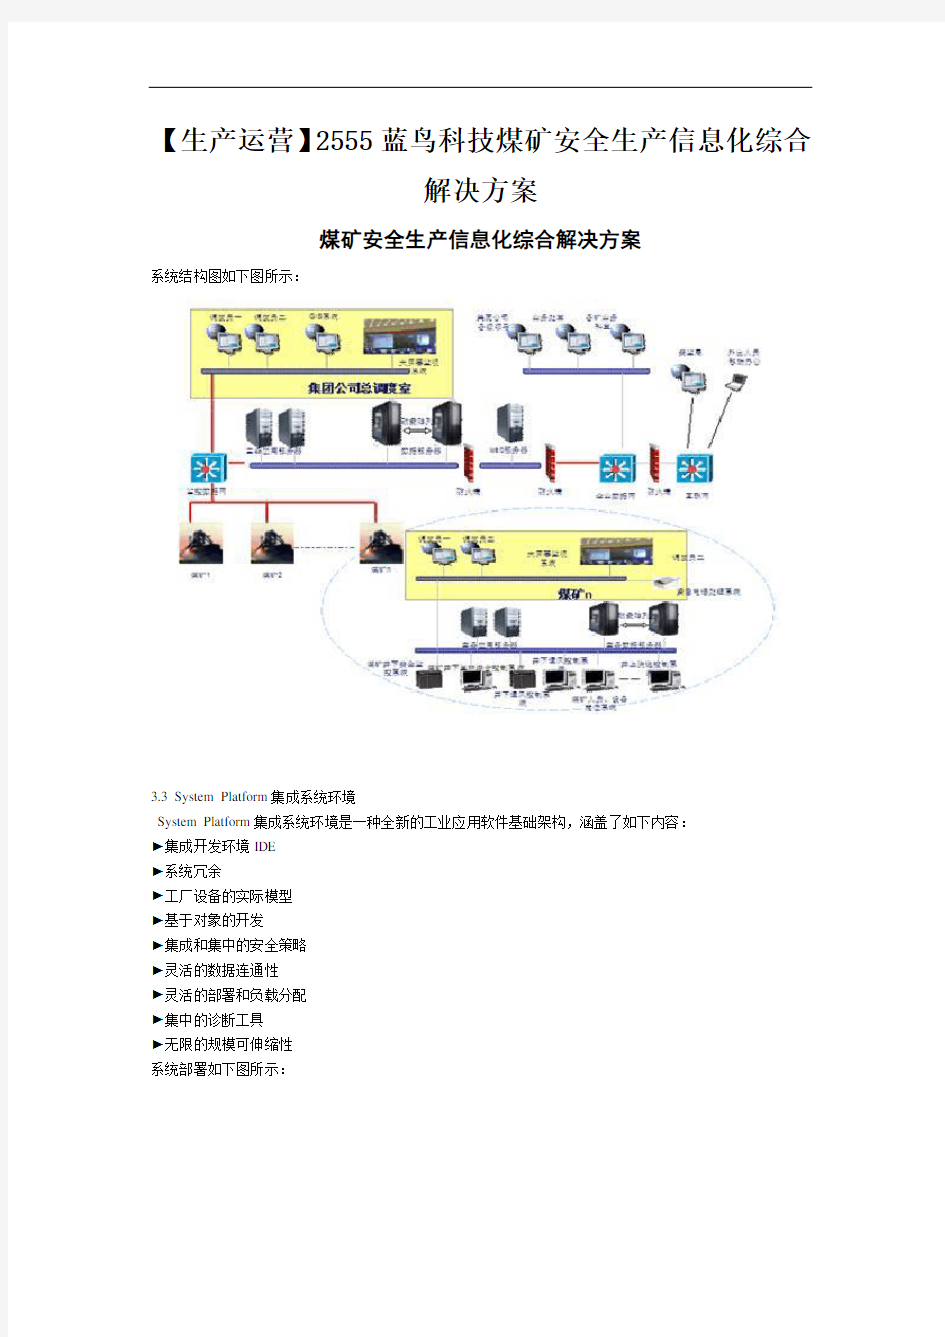 【生产运营】2555蓝鸟科技煤矿安全生产信息化综合解决方案